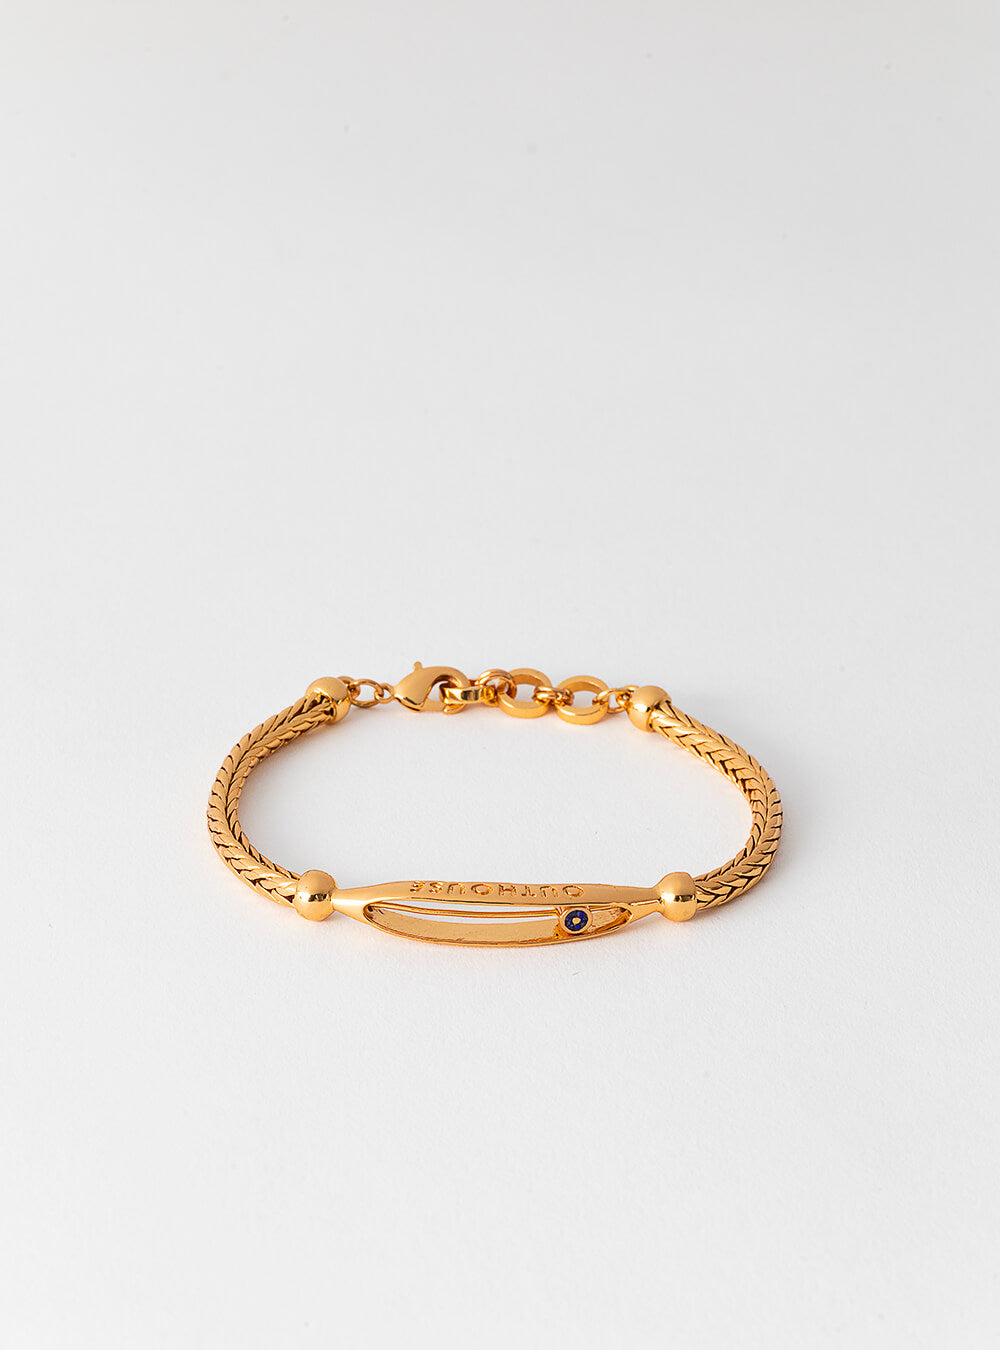 Buy GoldToned Bracelets  Bangles for Women by Karatcart Online  Ajiocom